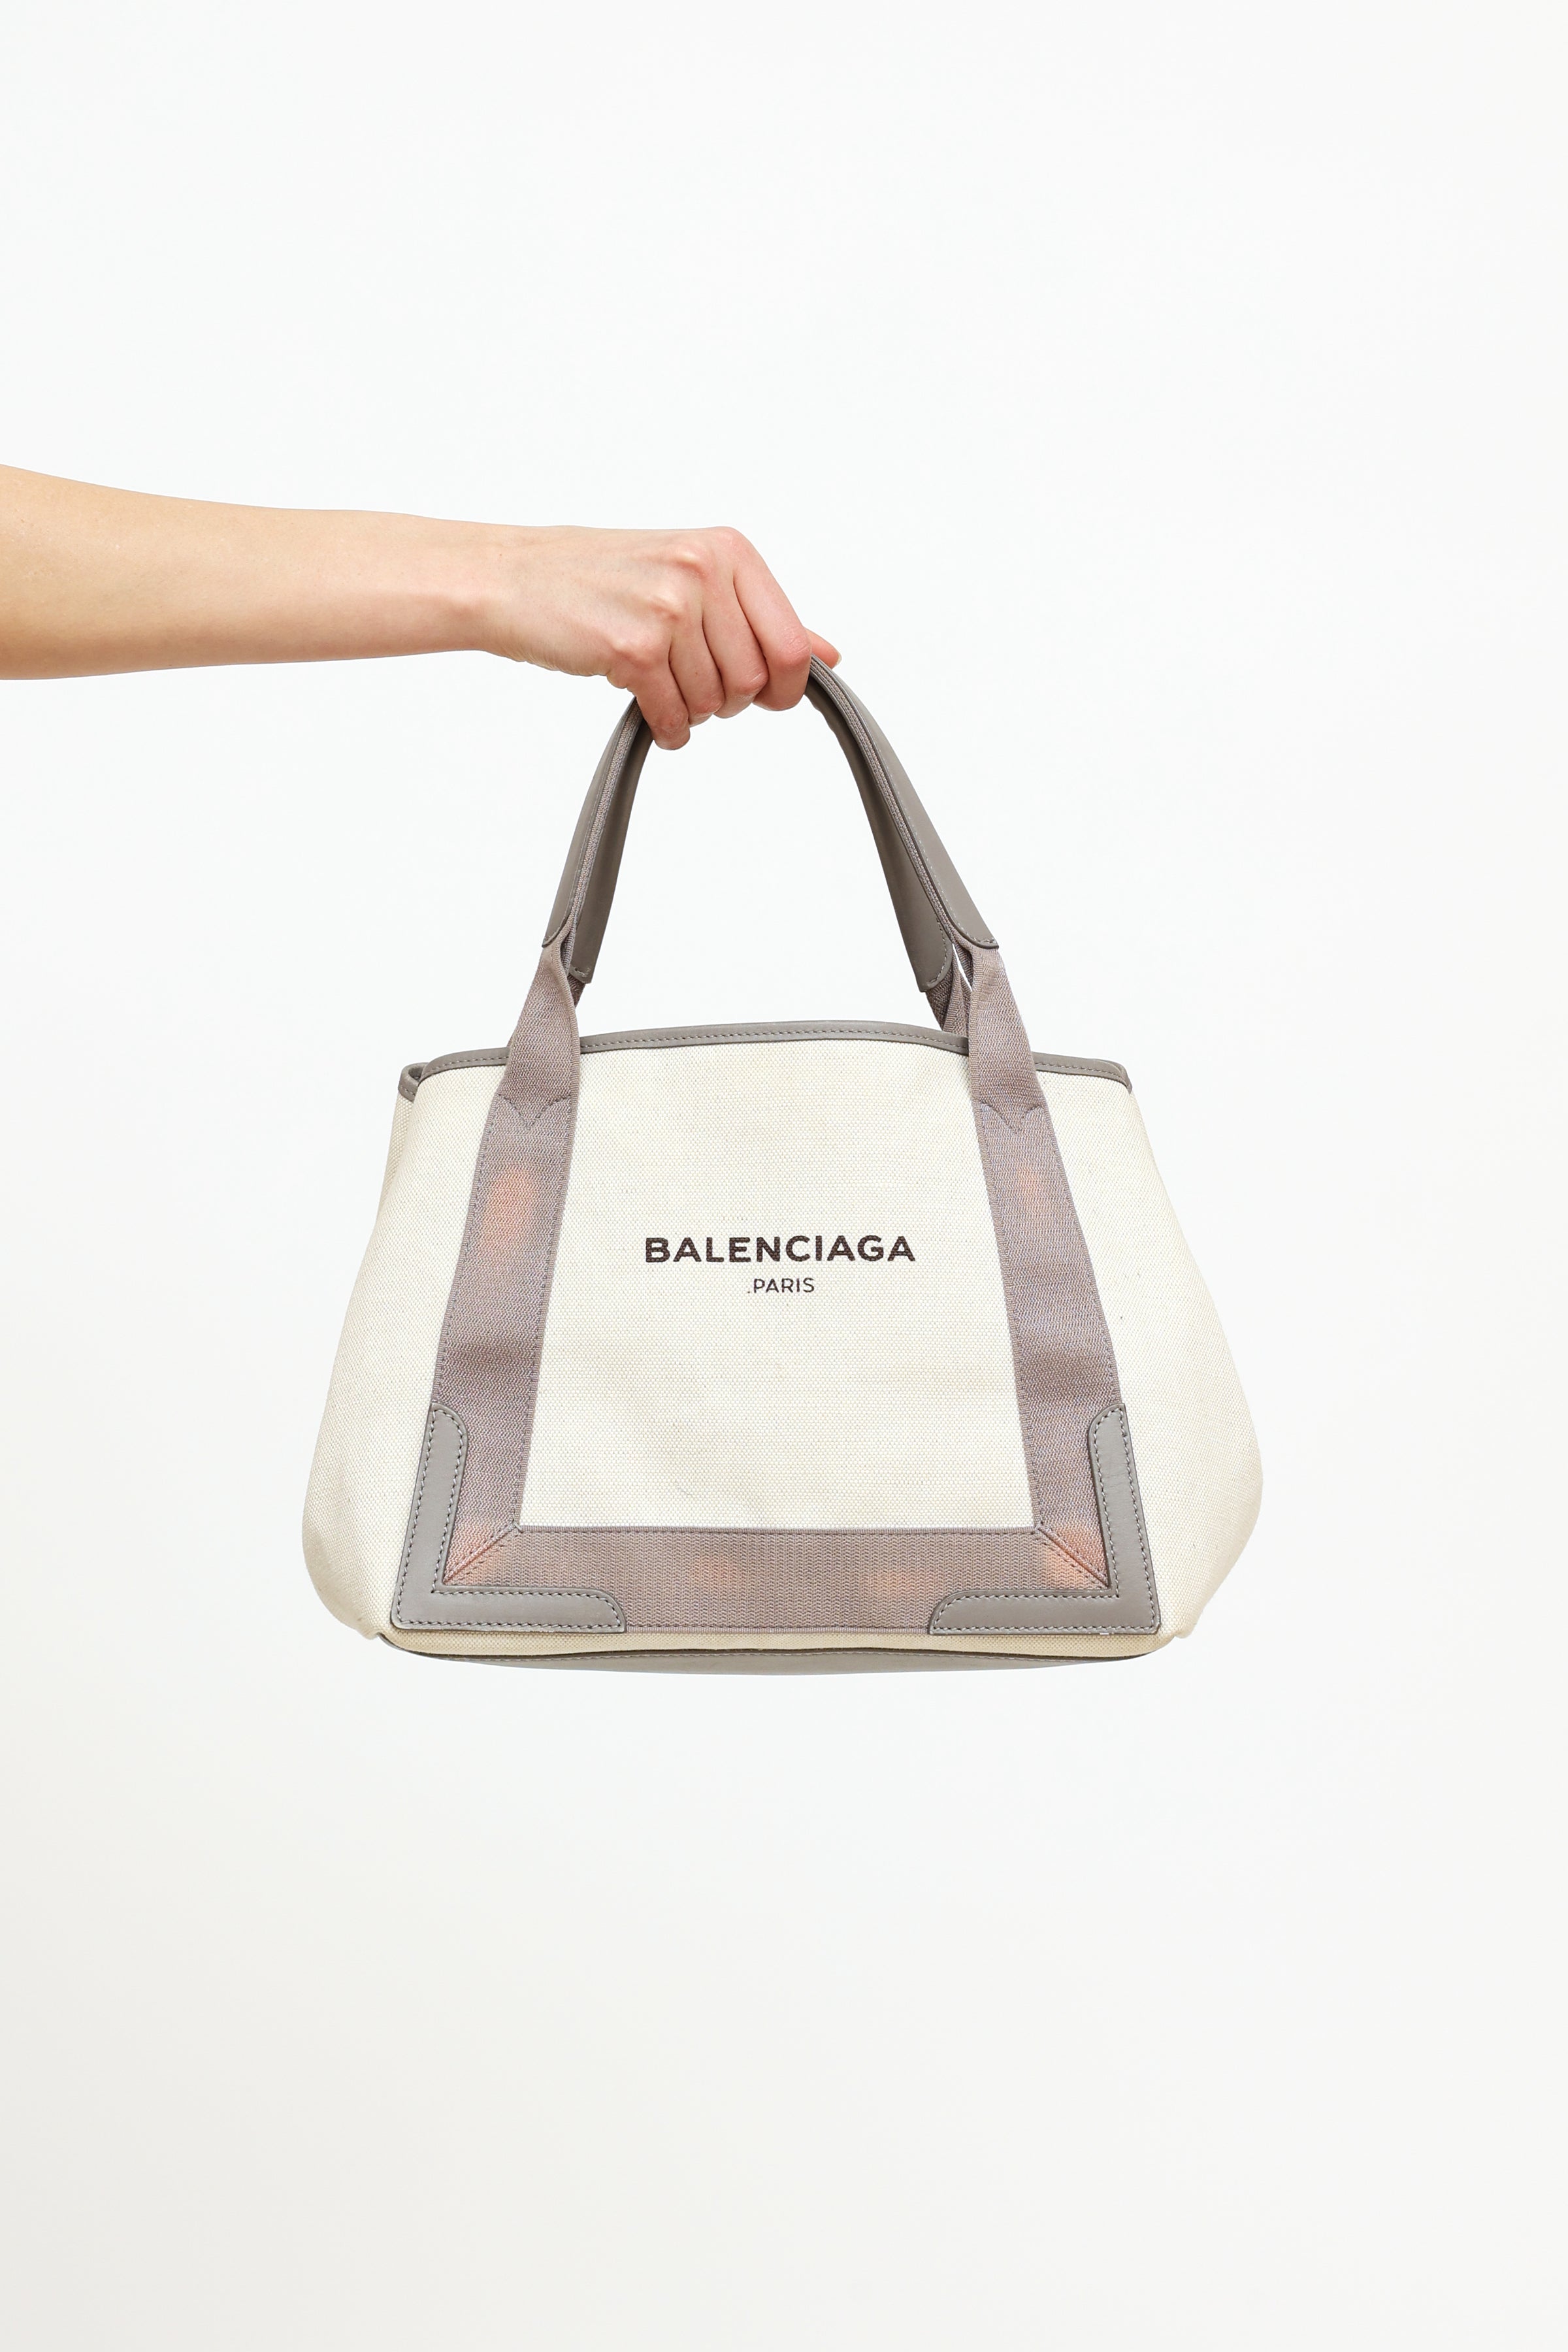 Balenciaga Canvas Bag Italy SAVE 56  falkinnismaris